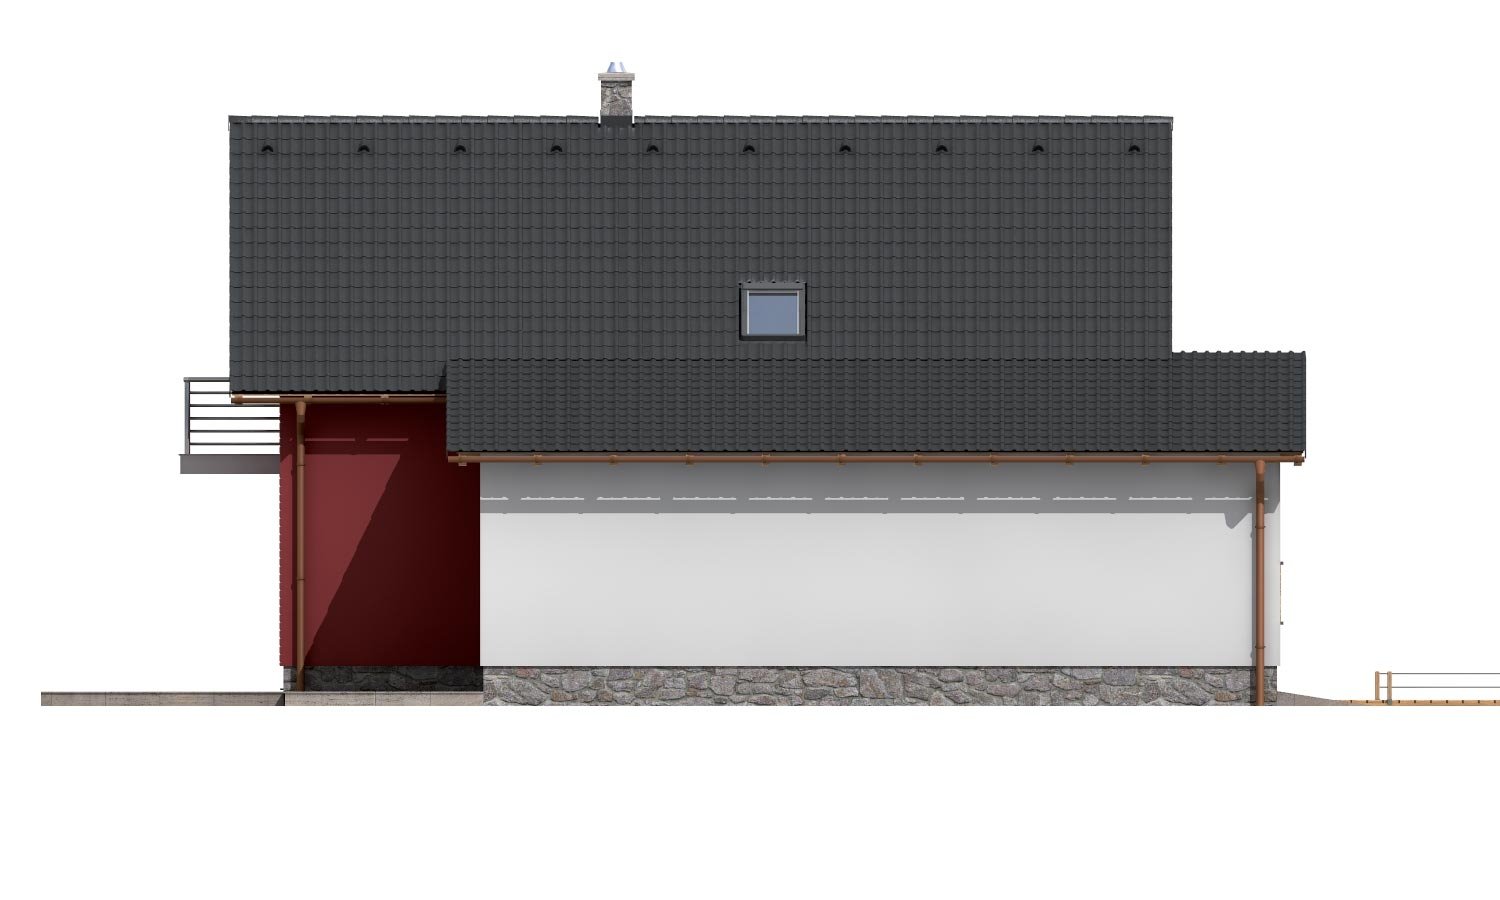 Pohľad 2. - Moderní rodinný dům s garáží a terasou na patře.